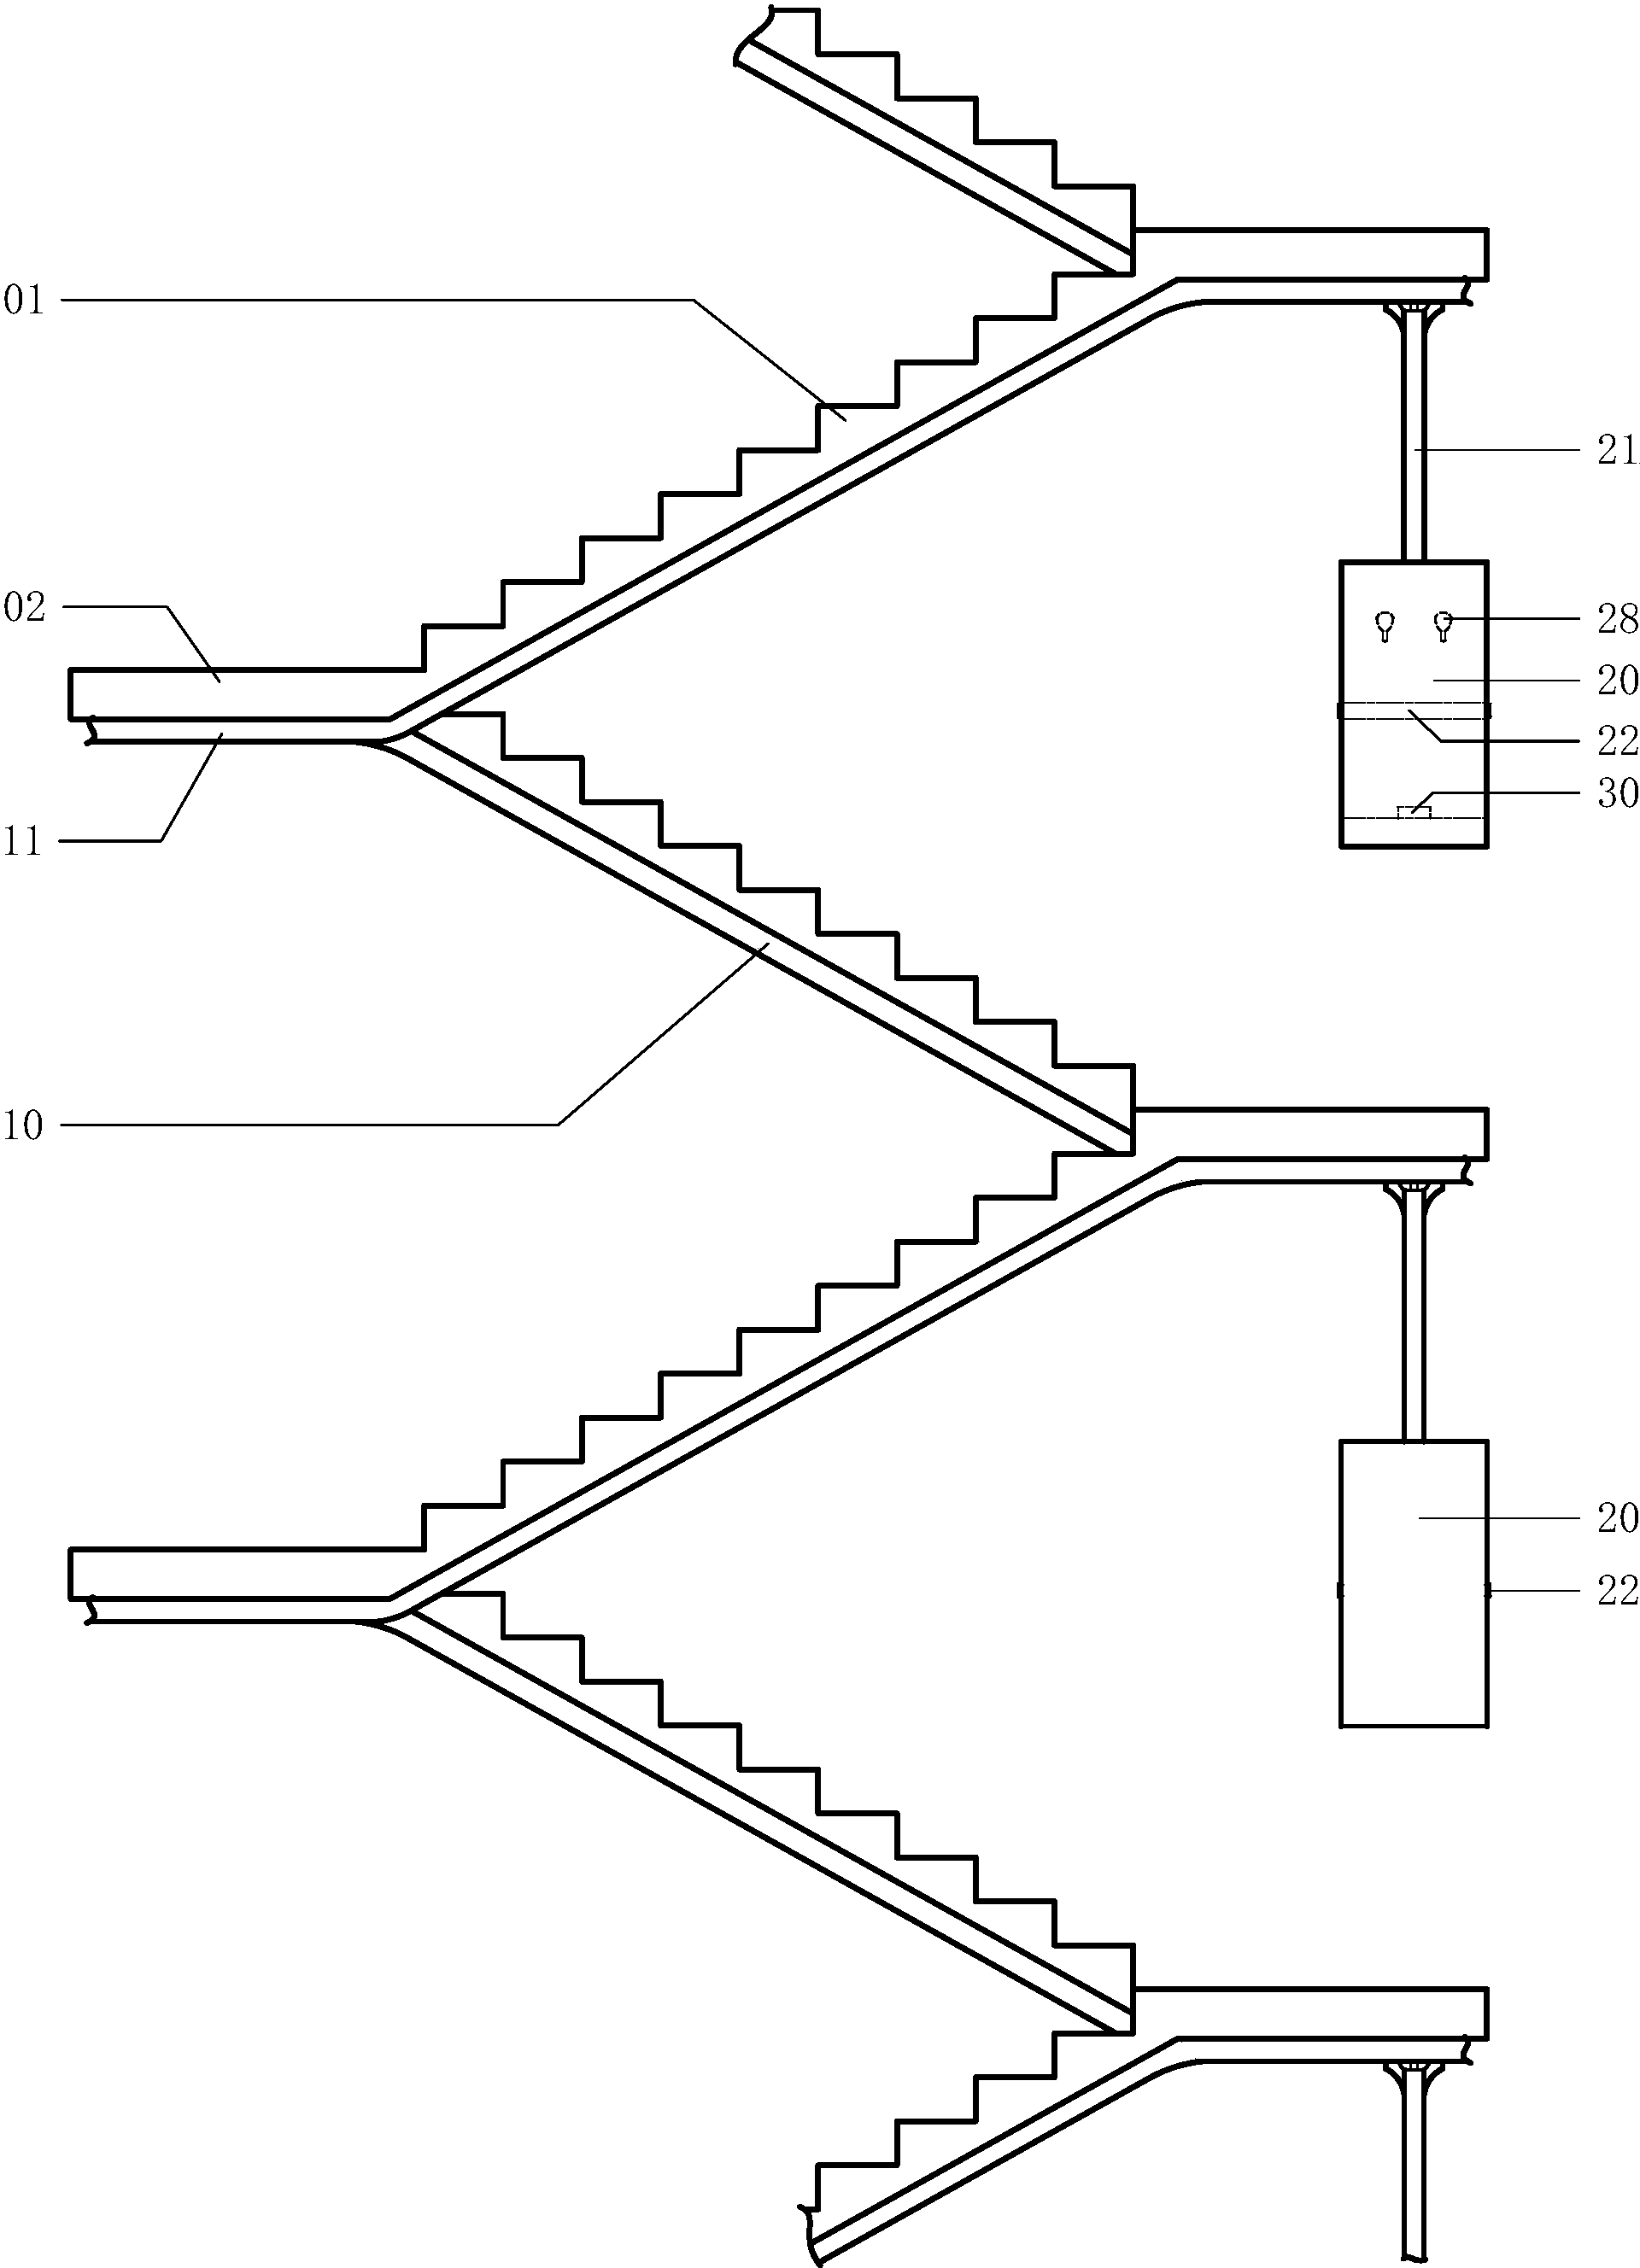 逃生梯设计过程图片